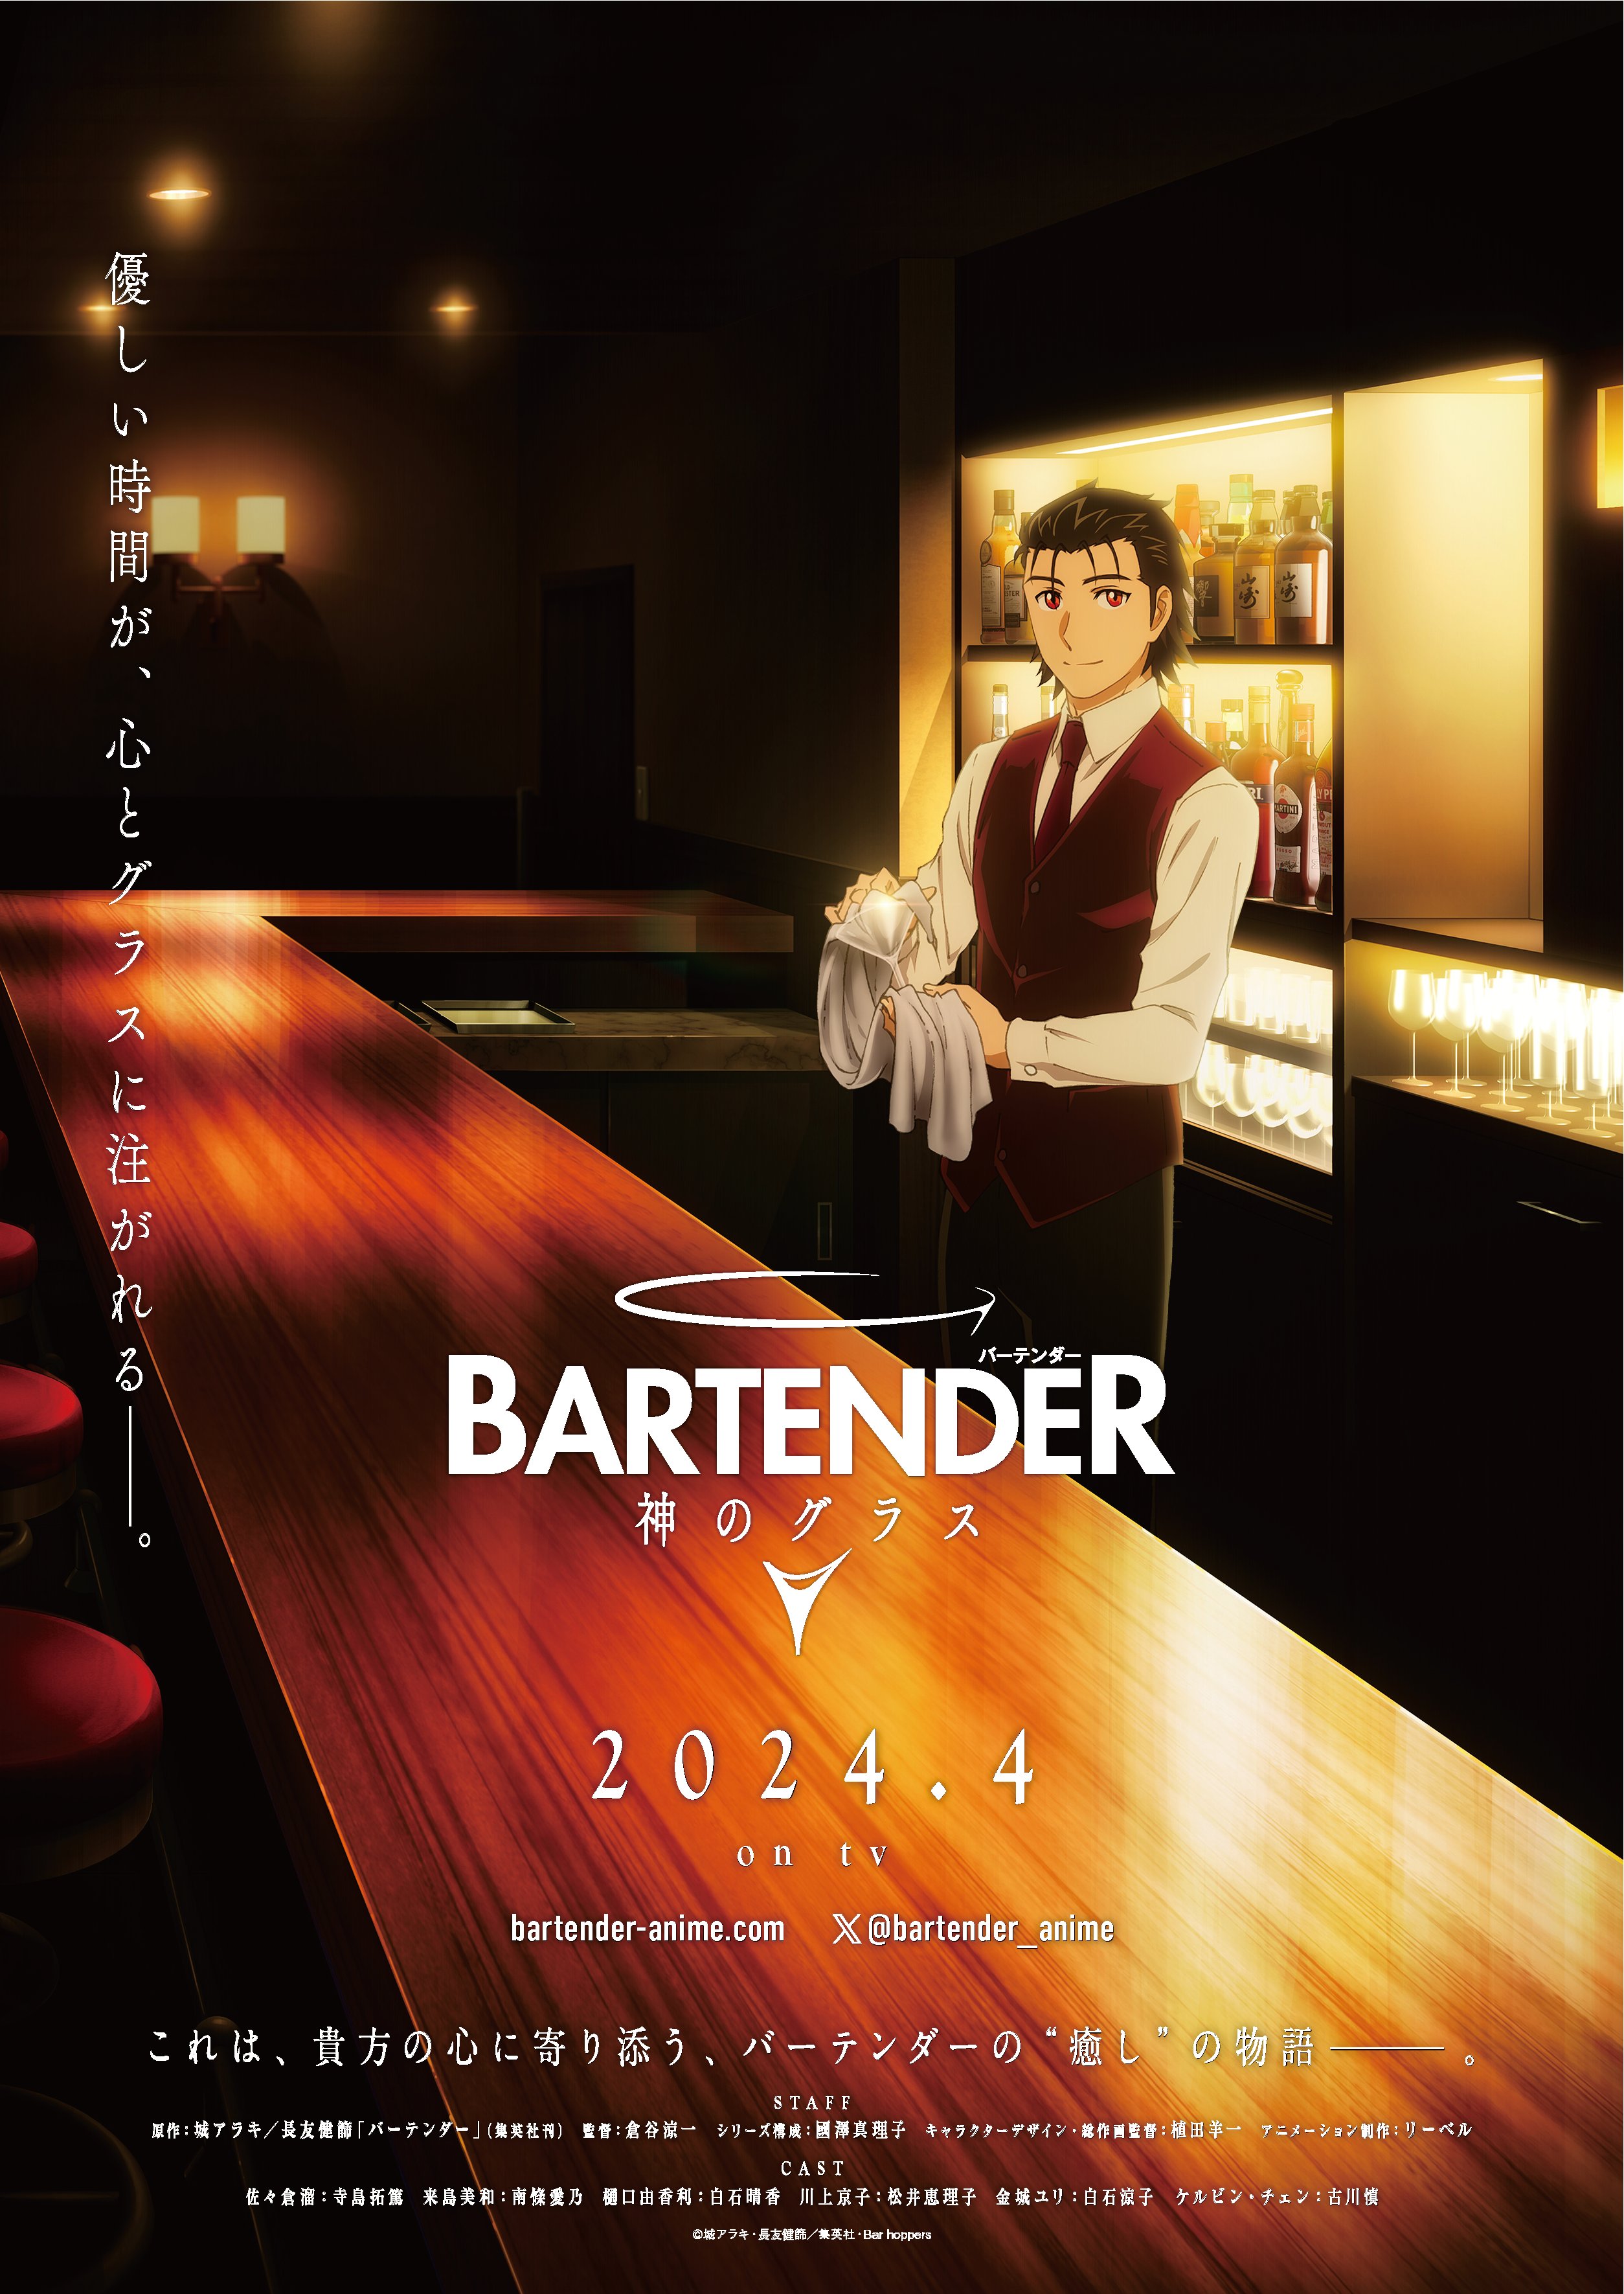 tráiler visual del anime bartender glass god